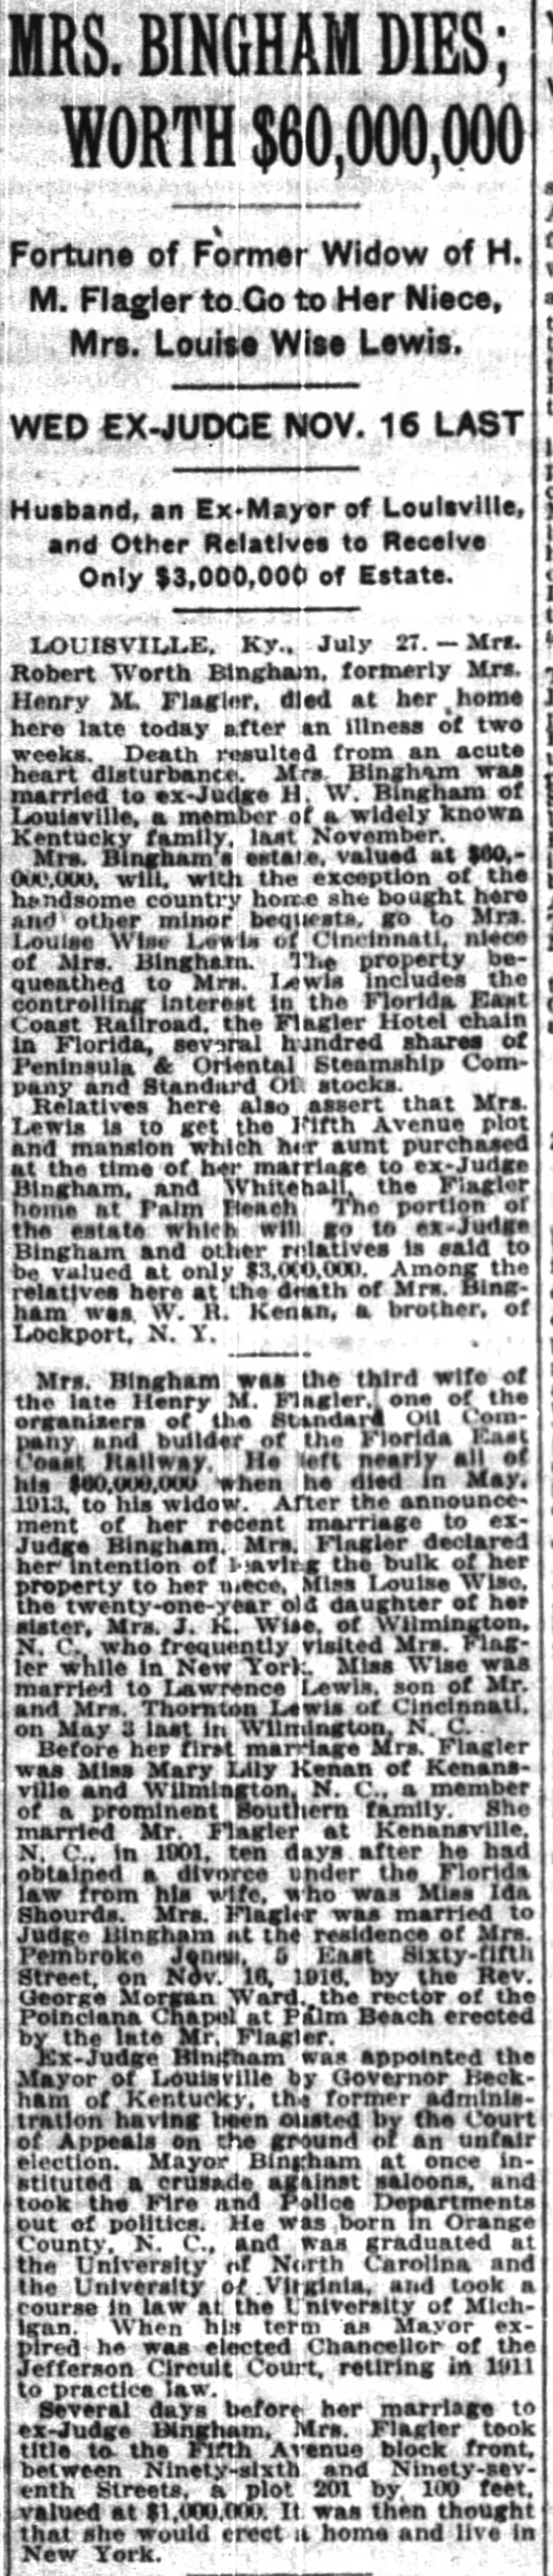 Mrs. Bingham Dies; Worth $60,000,000